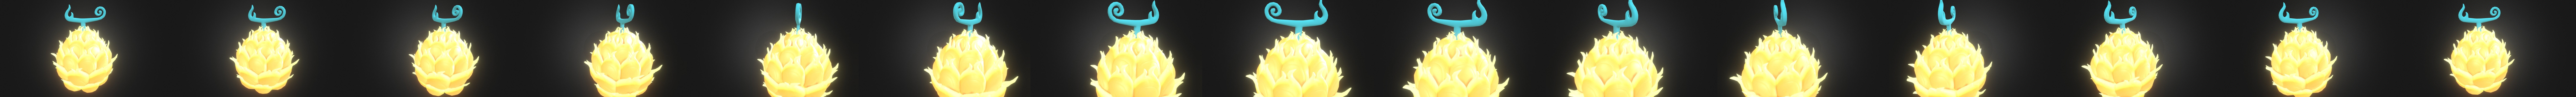 Devil Fruit - Mera Mera no Mi 3D model 3D printable